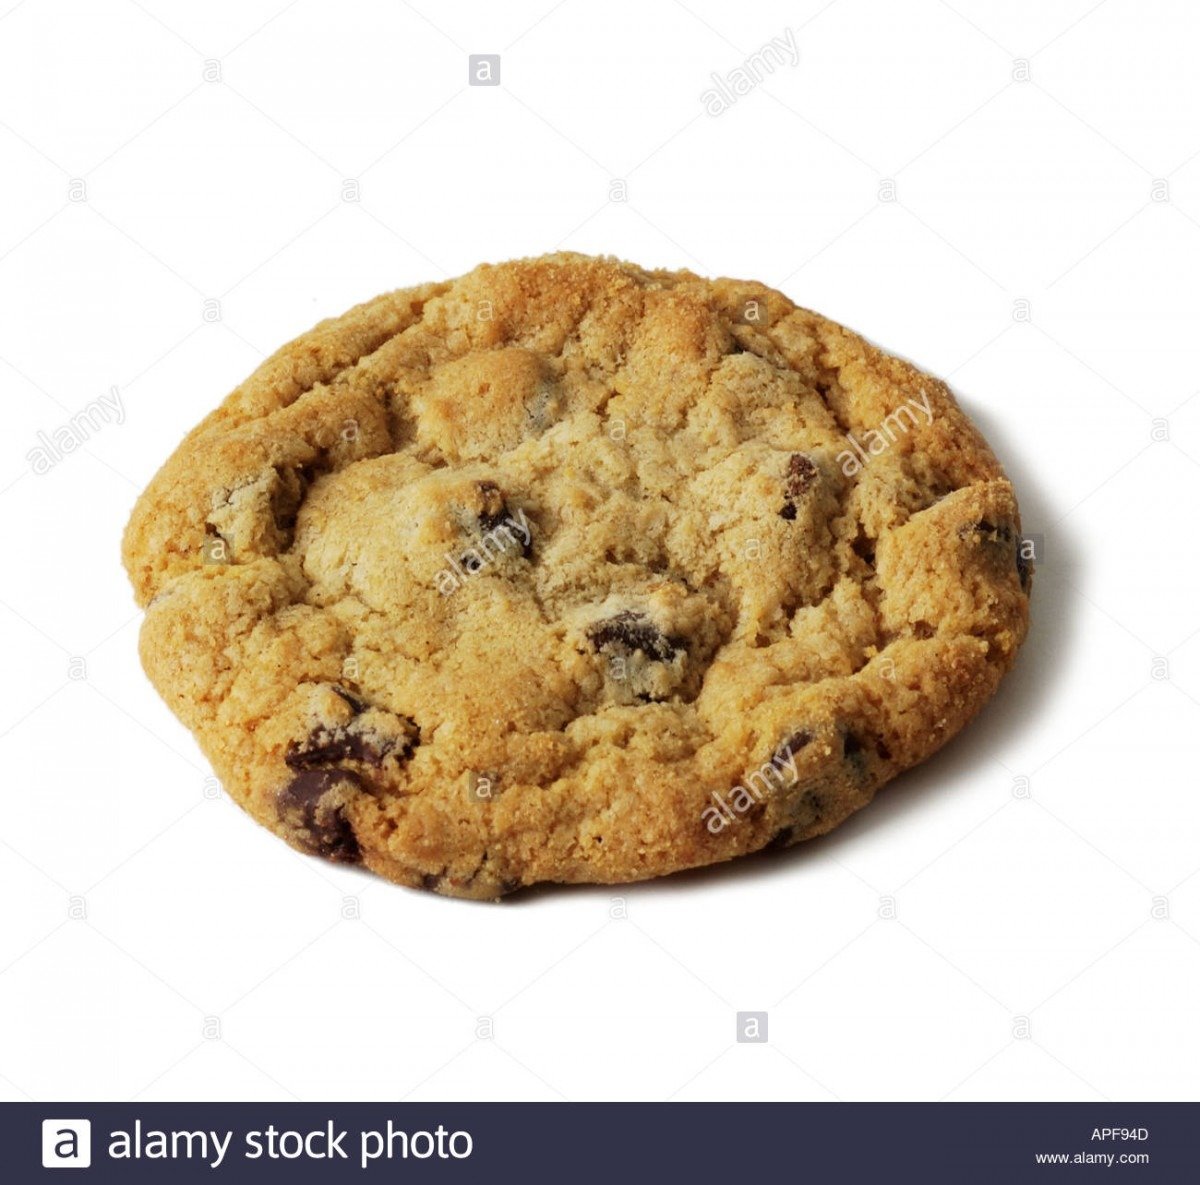 Single Chocolate Chip Cookie Stock Photos & Single Chocolate Chip